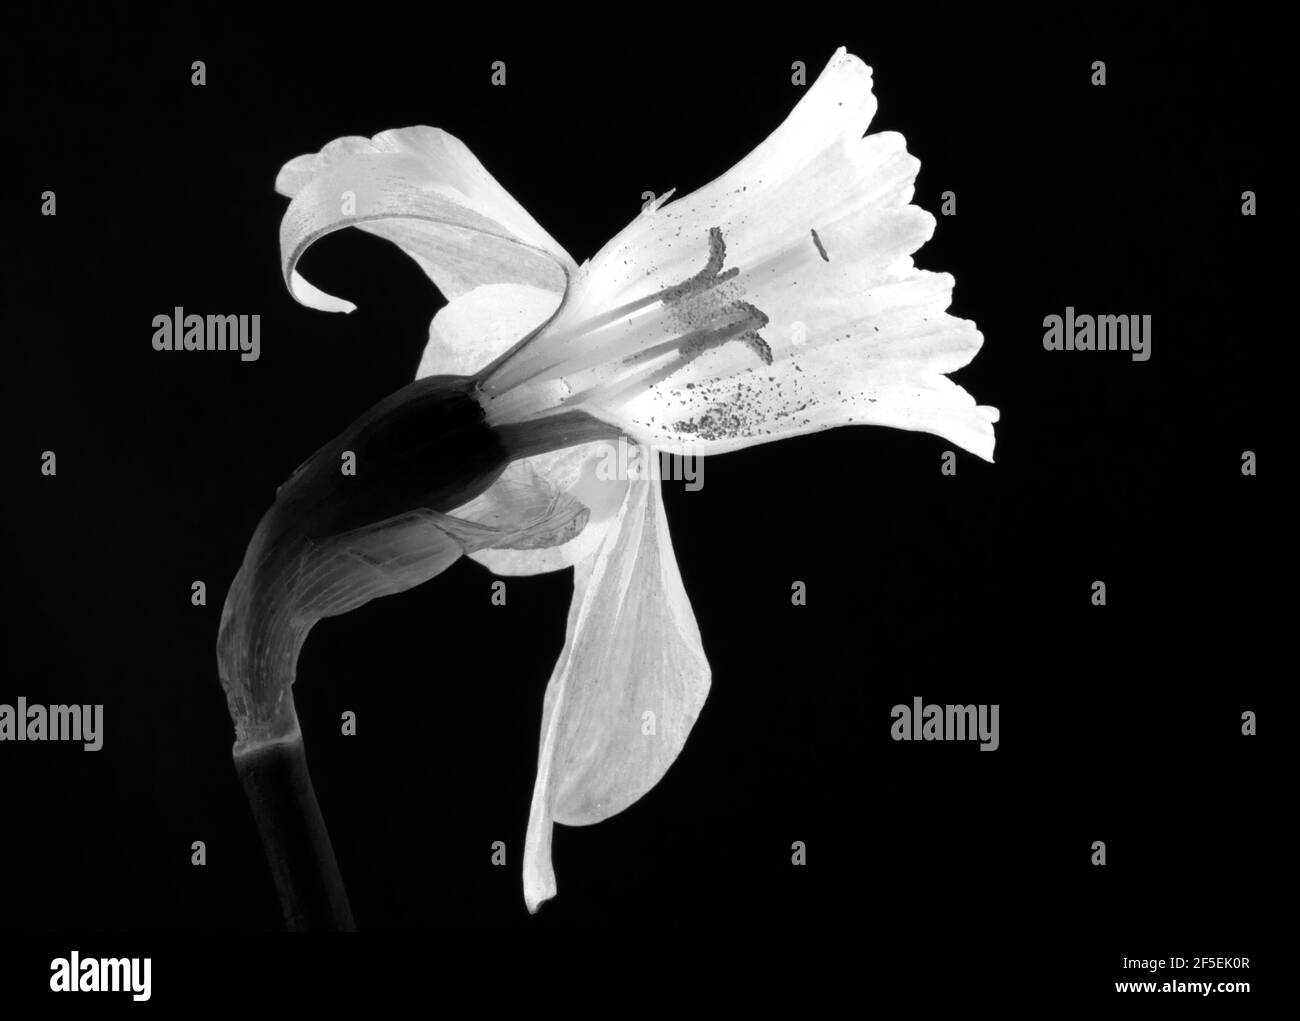 Die trompetenförmige innere Struktur des Daffodil-Blütenstands schützt die Fortpflanzungsteile der Blüte. Stockfoto